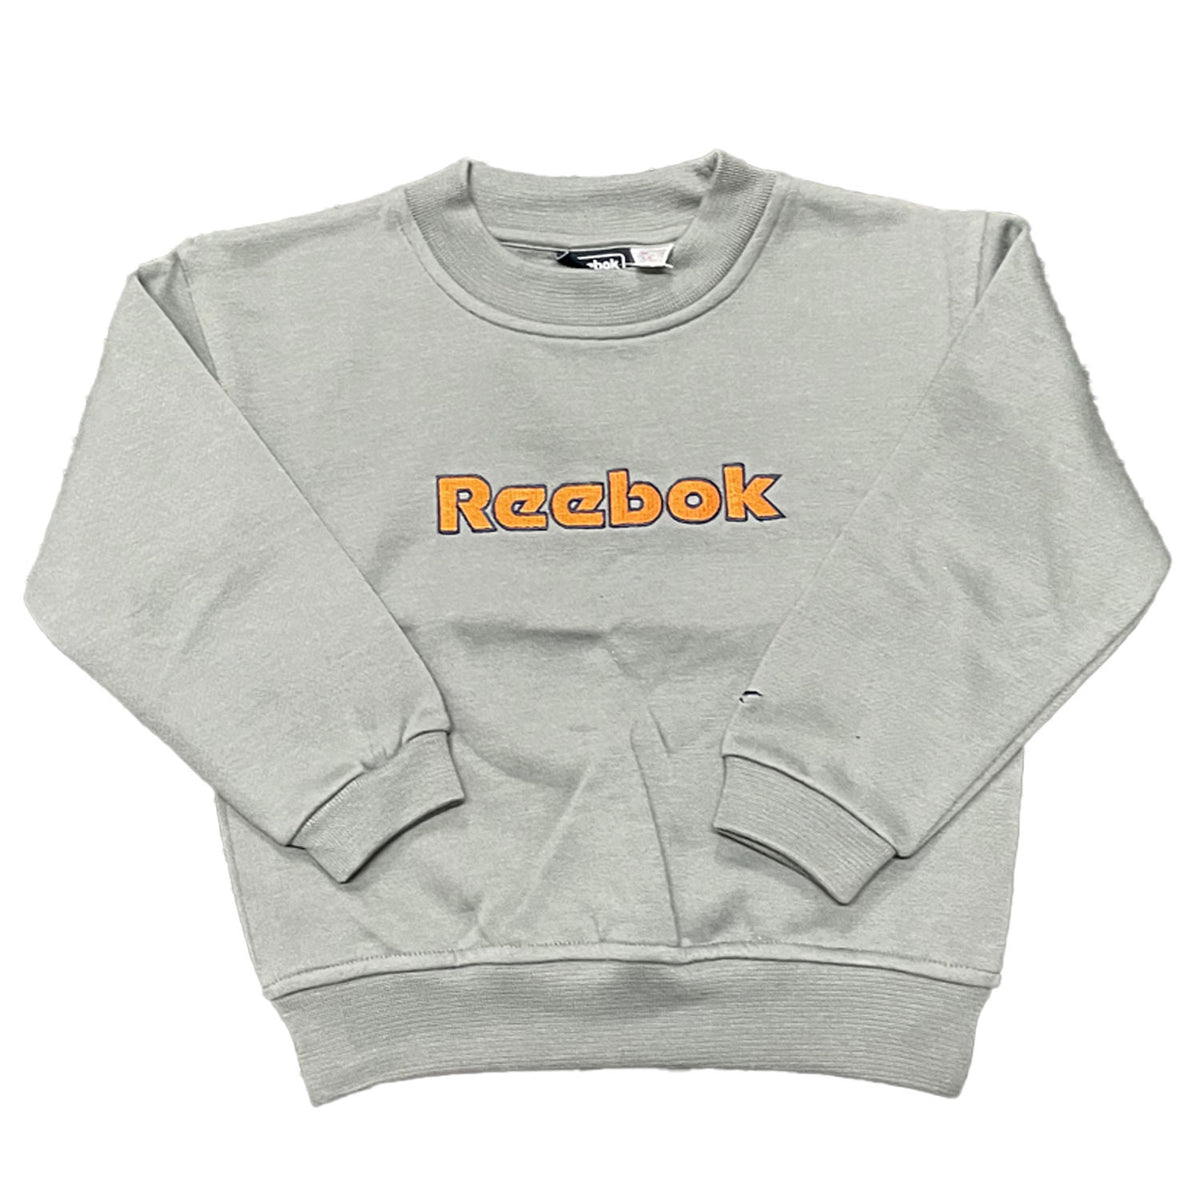 Reebok Infants Sports Sweatshirt 3